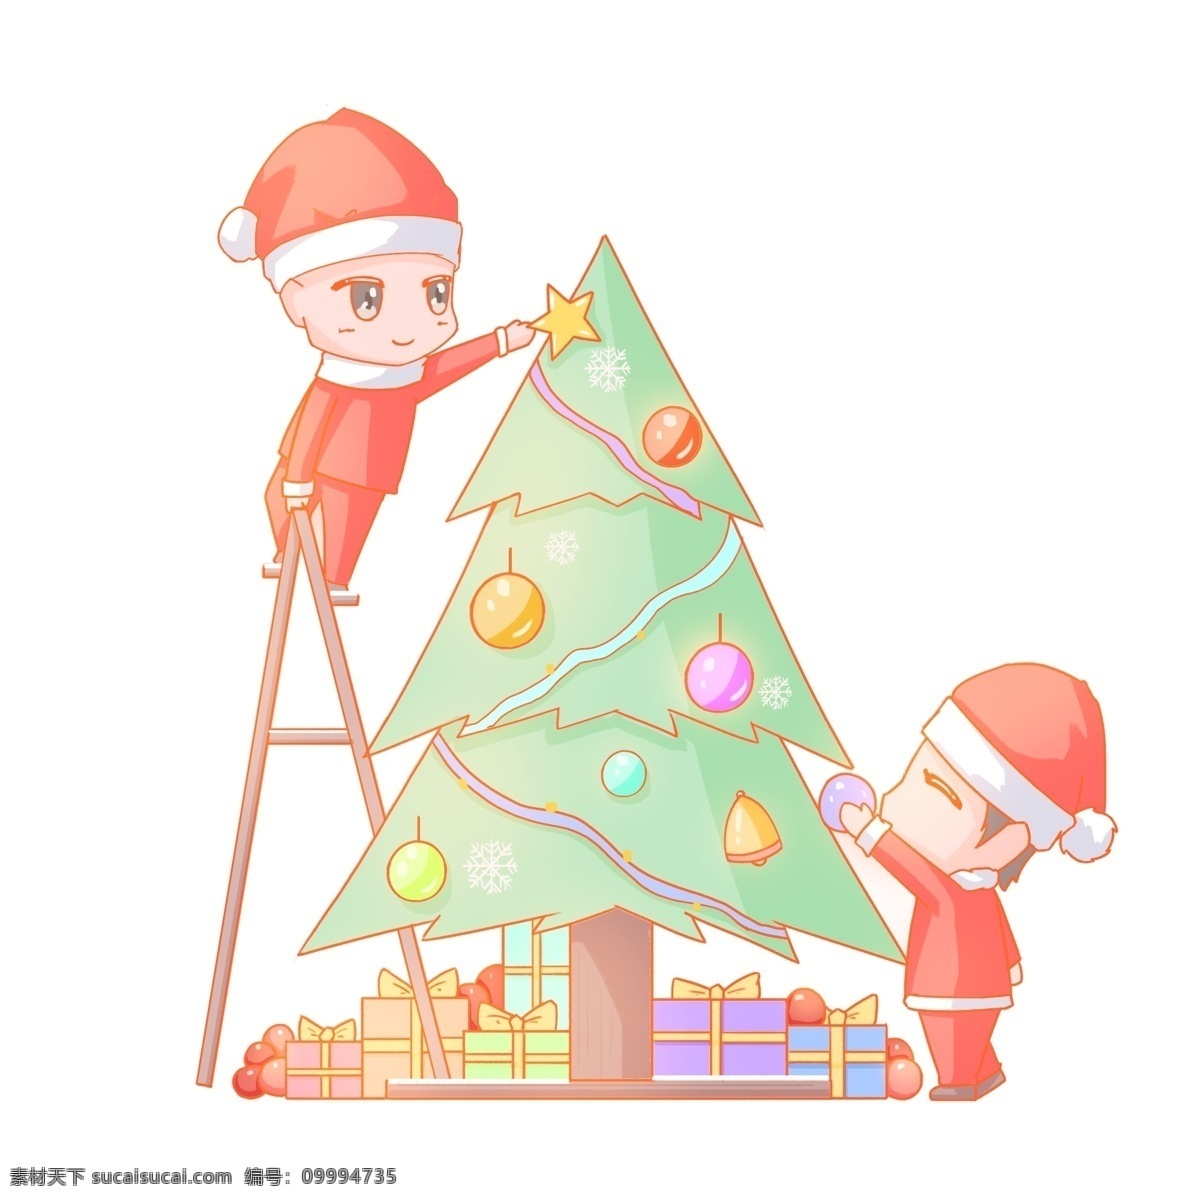 圣诞节 卡通 手绘 人物 装饰 圣诞树 免 扣 卡通手绘风格 装饰圣诞树 梯子 圣诞装 圣诞礼物 五彩球 彩带 铃铛 圣诞快乐